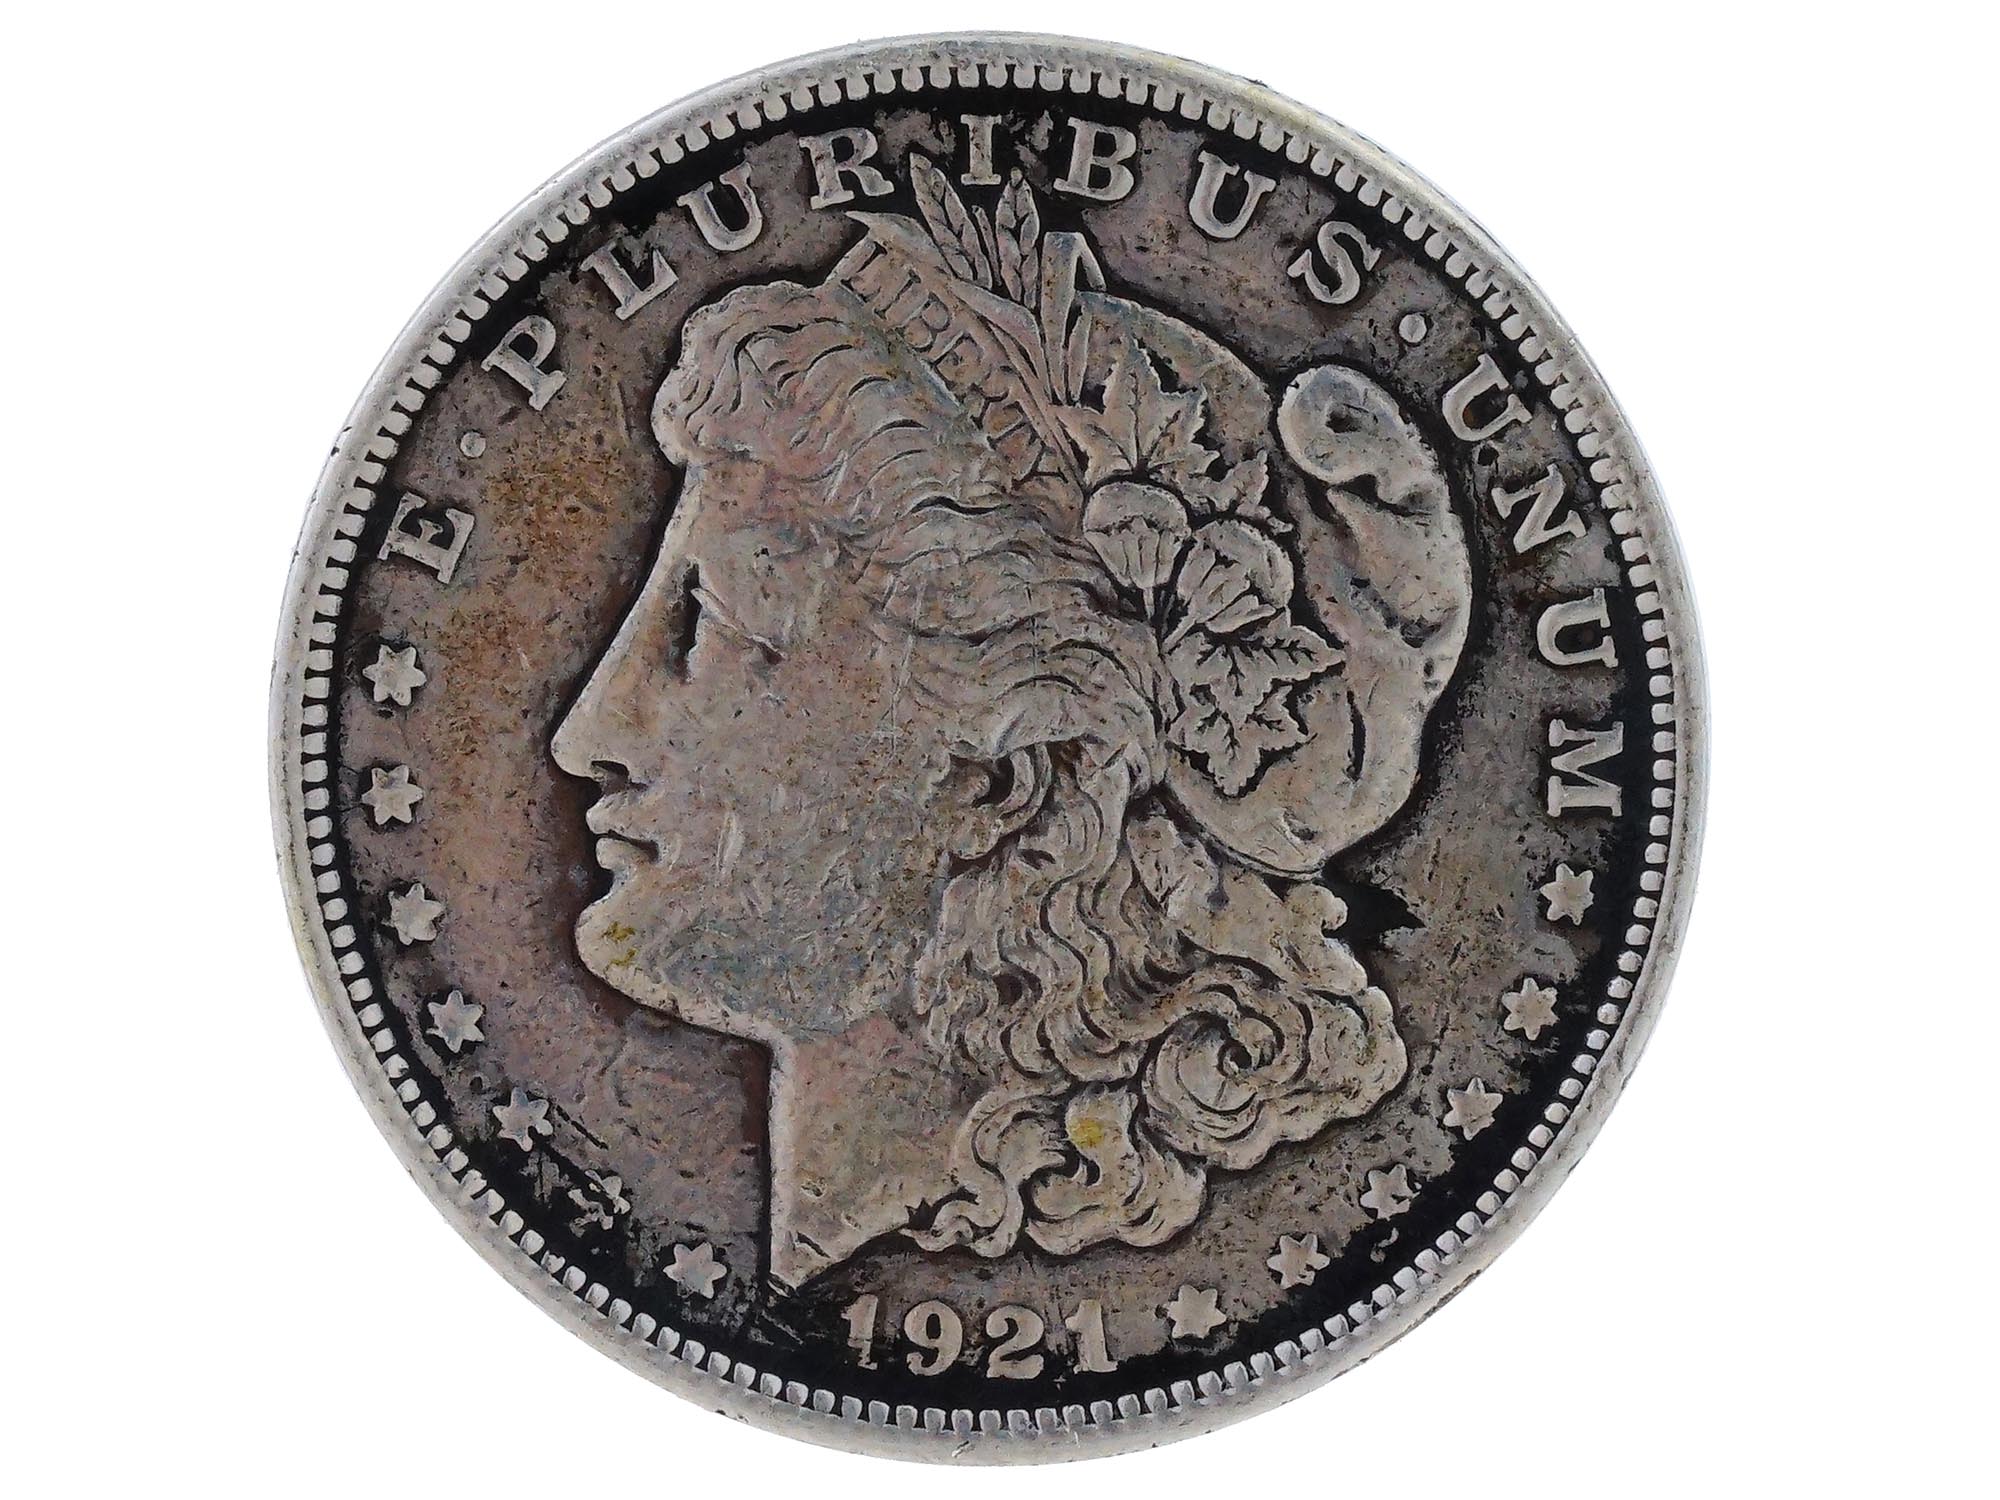 ANTIQUE AMERICAN 1921 MORGAN 1 DOLLAR SILVER COIN PIC-0